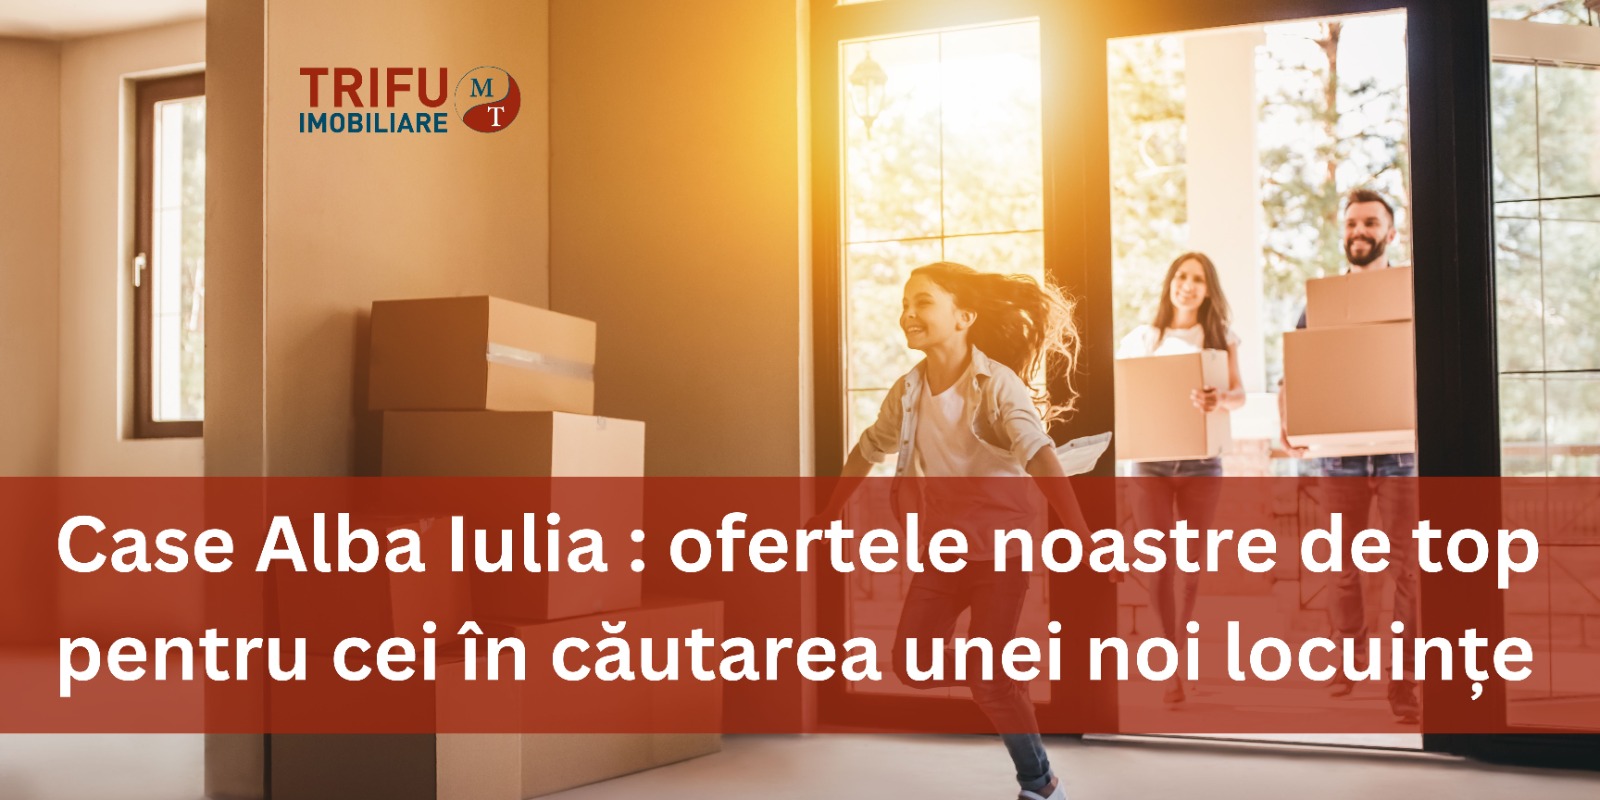 Case Alba Iulia - Ofertele noastre de top pentru cei in cautarea unei noi locuinte